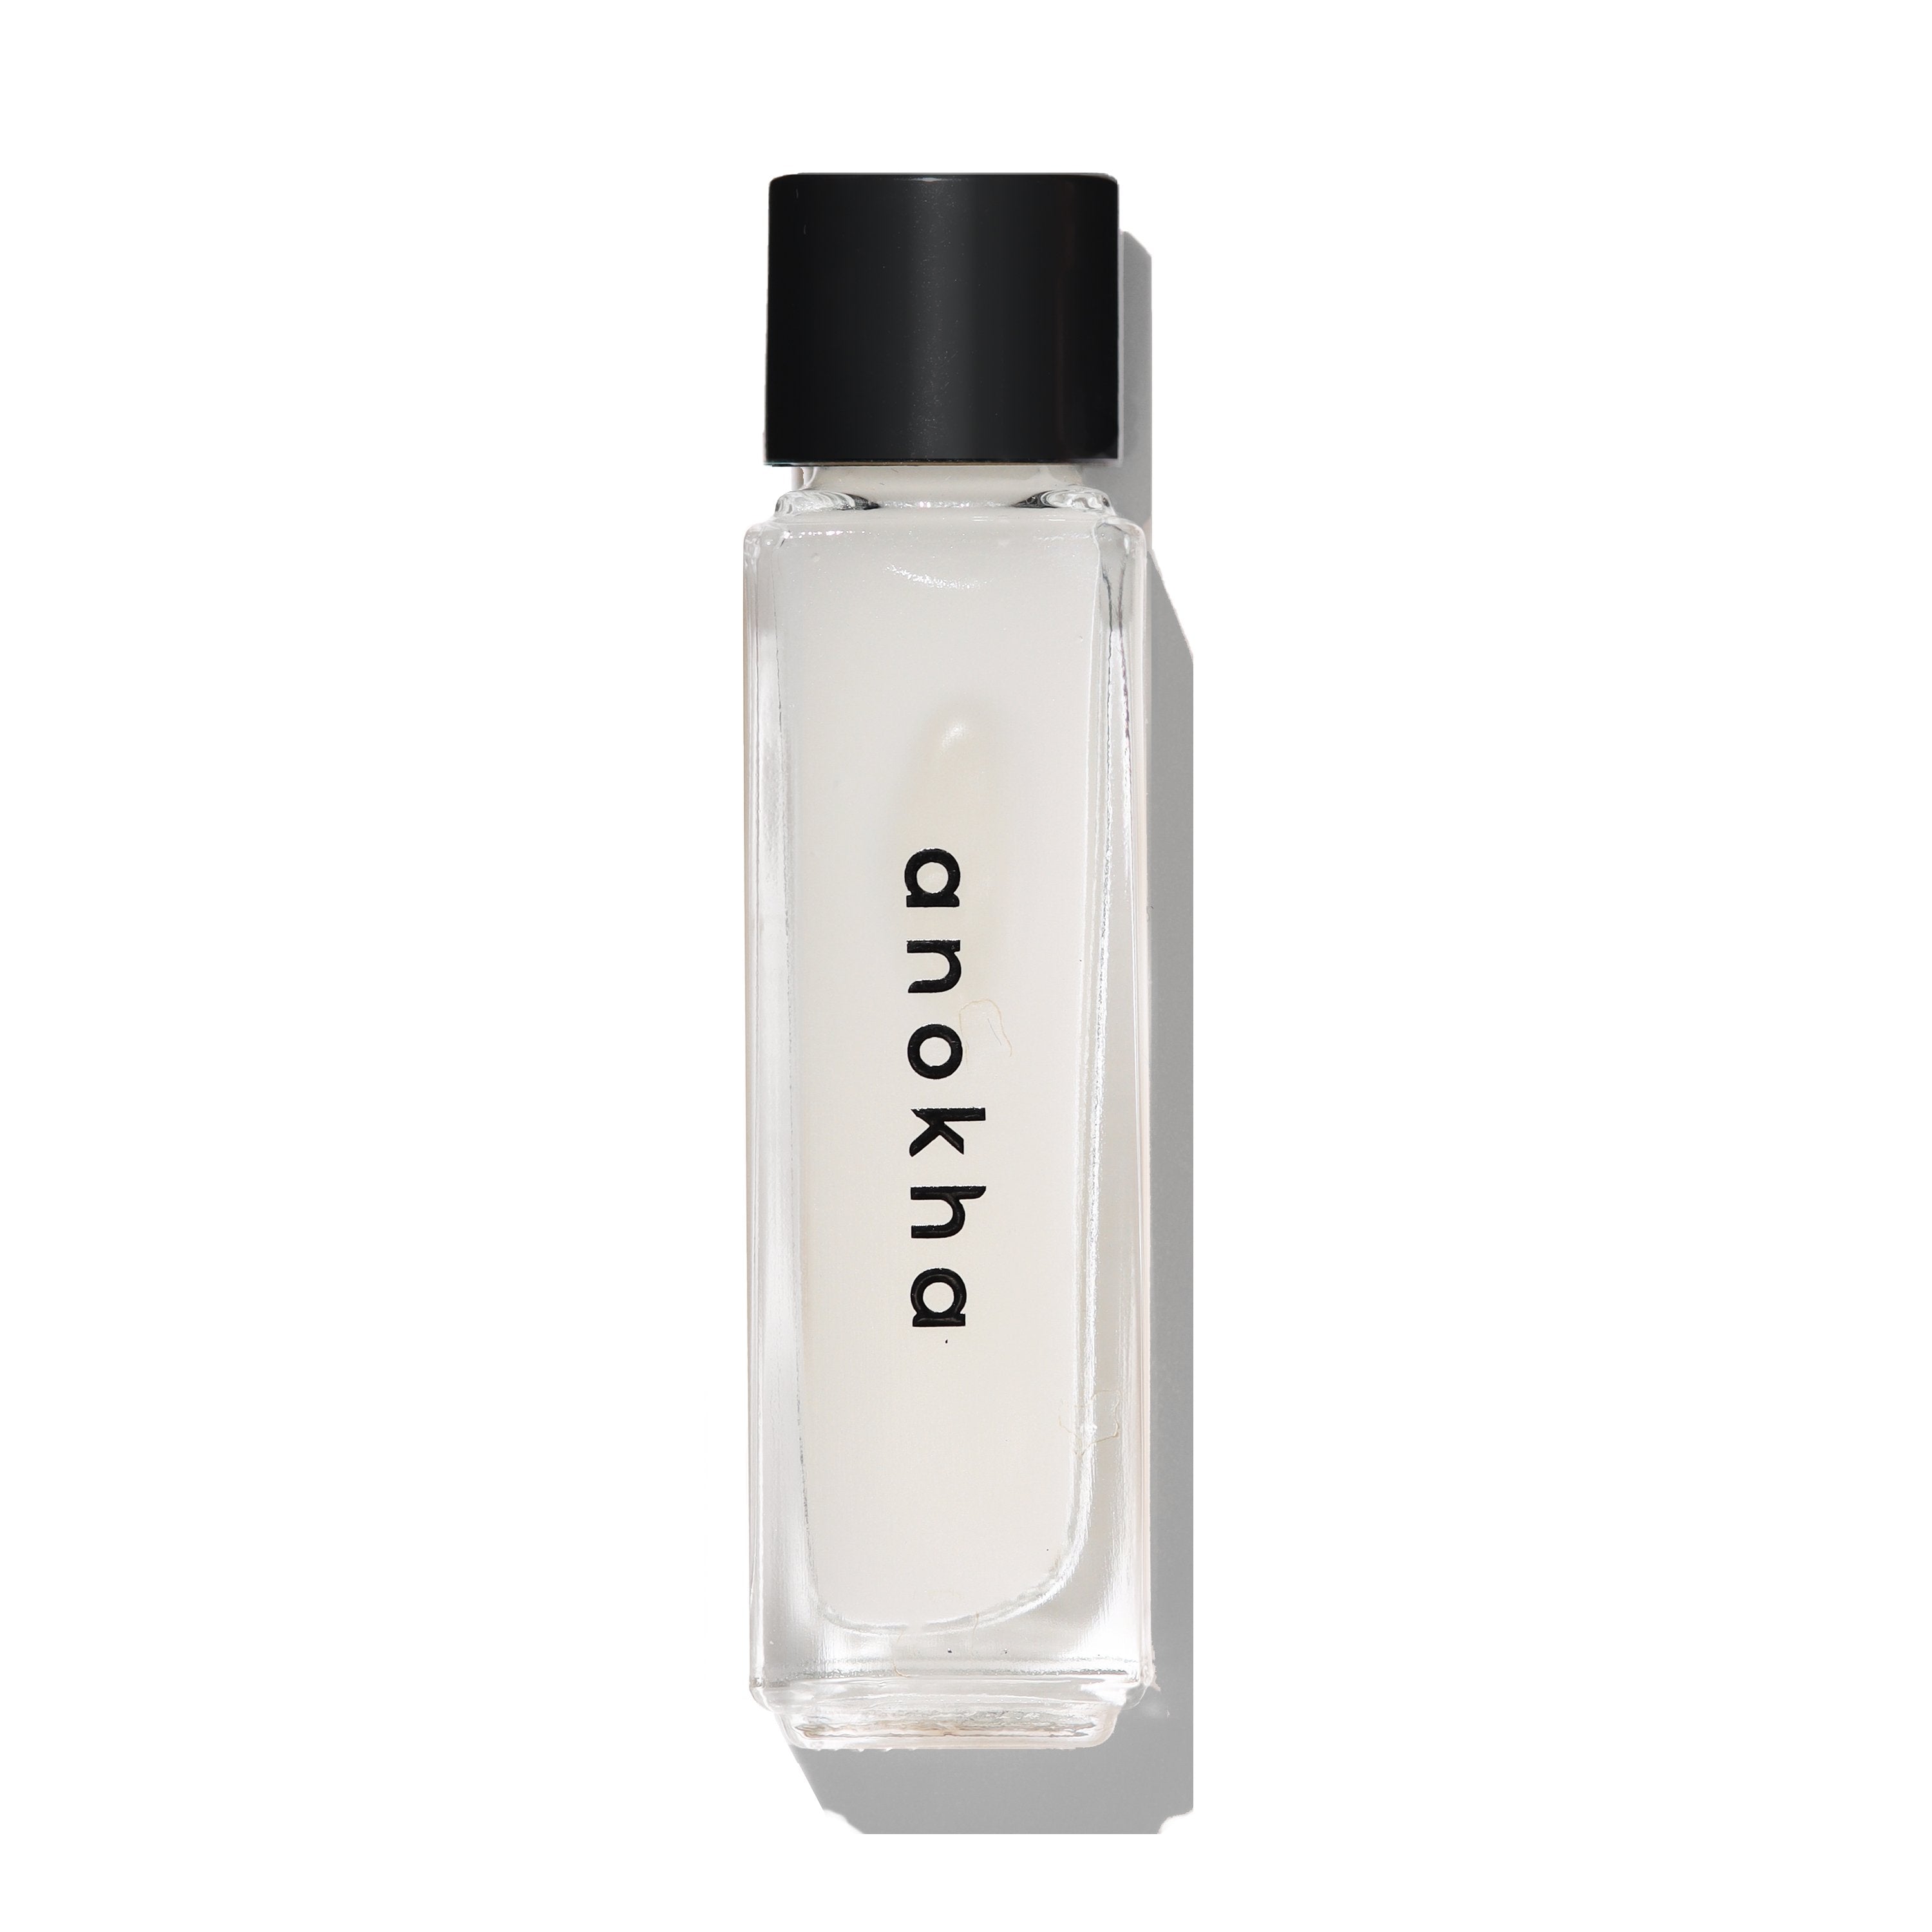 anokha skincare jasmine serum bottle 0.25 oz 7.5 ml on white background